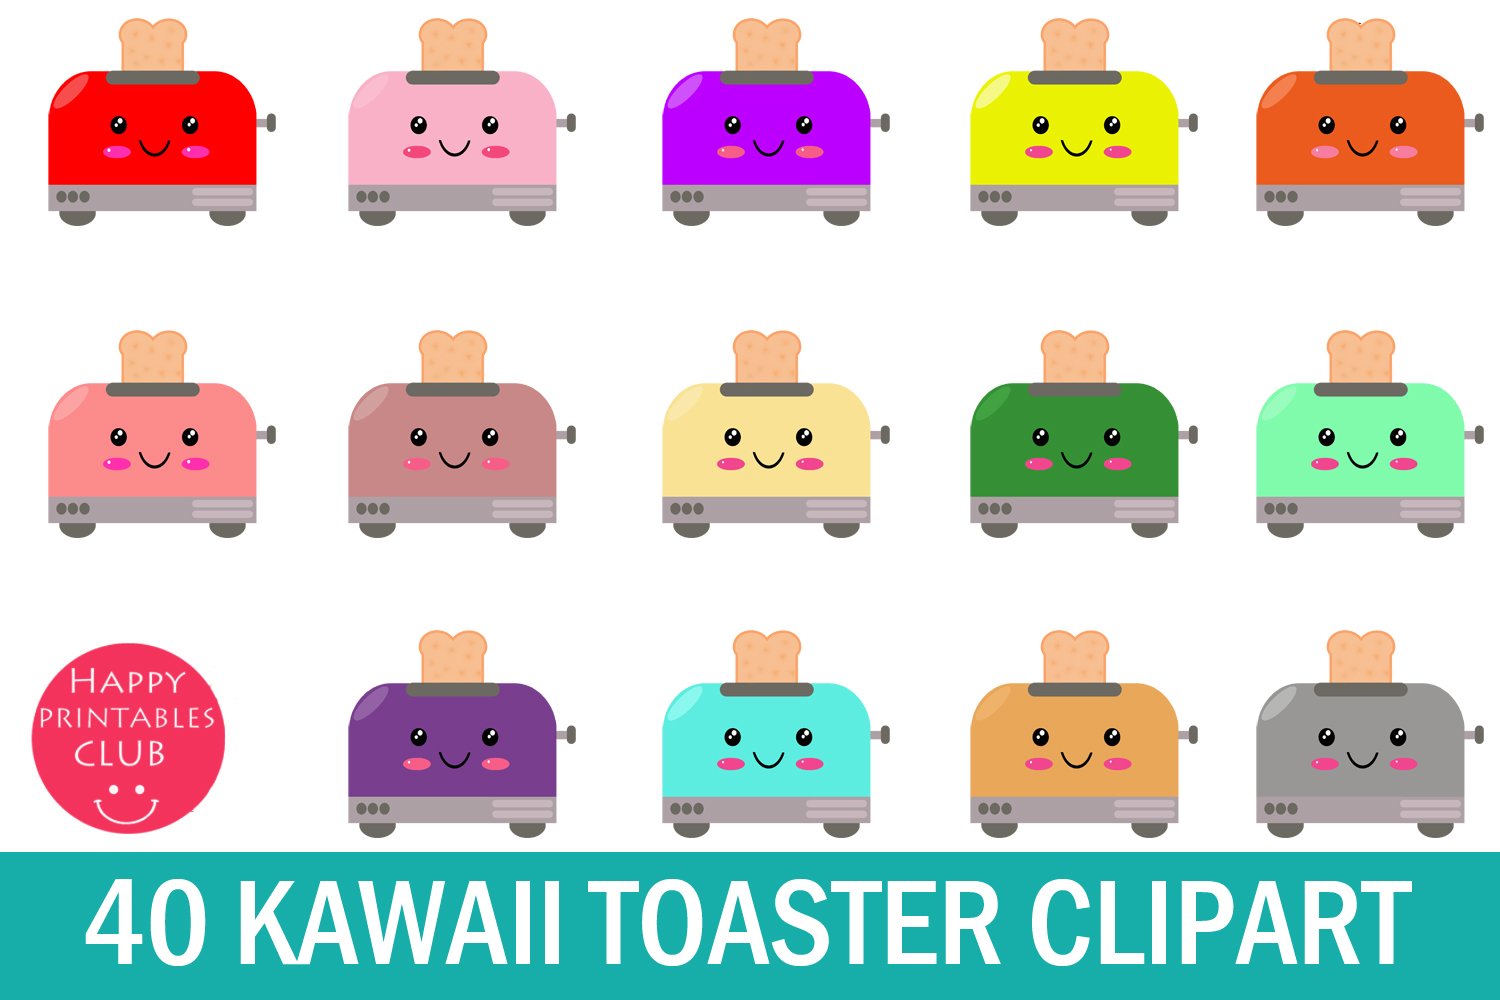 Multicolored toasters are fun.